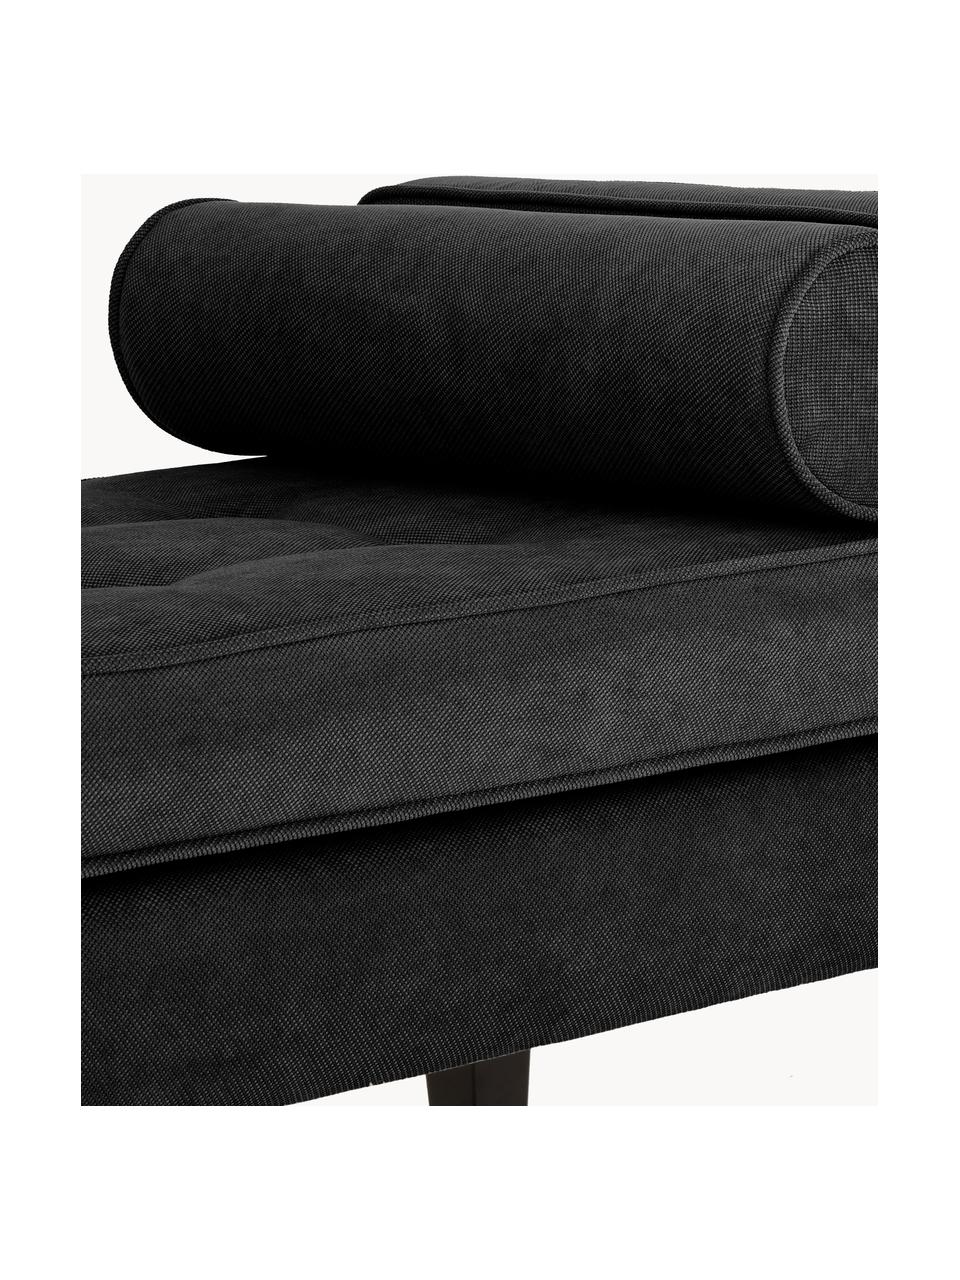 Banc bout de lit avec coussins Mia, Tissu noir, larg. 115 x haut. 61 cm